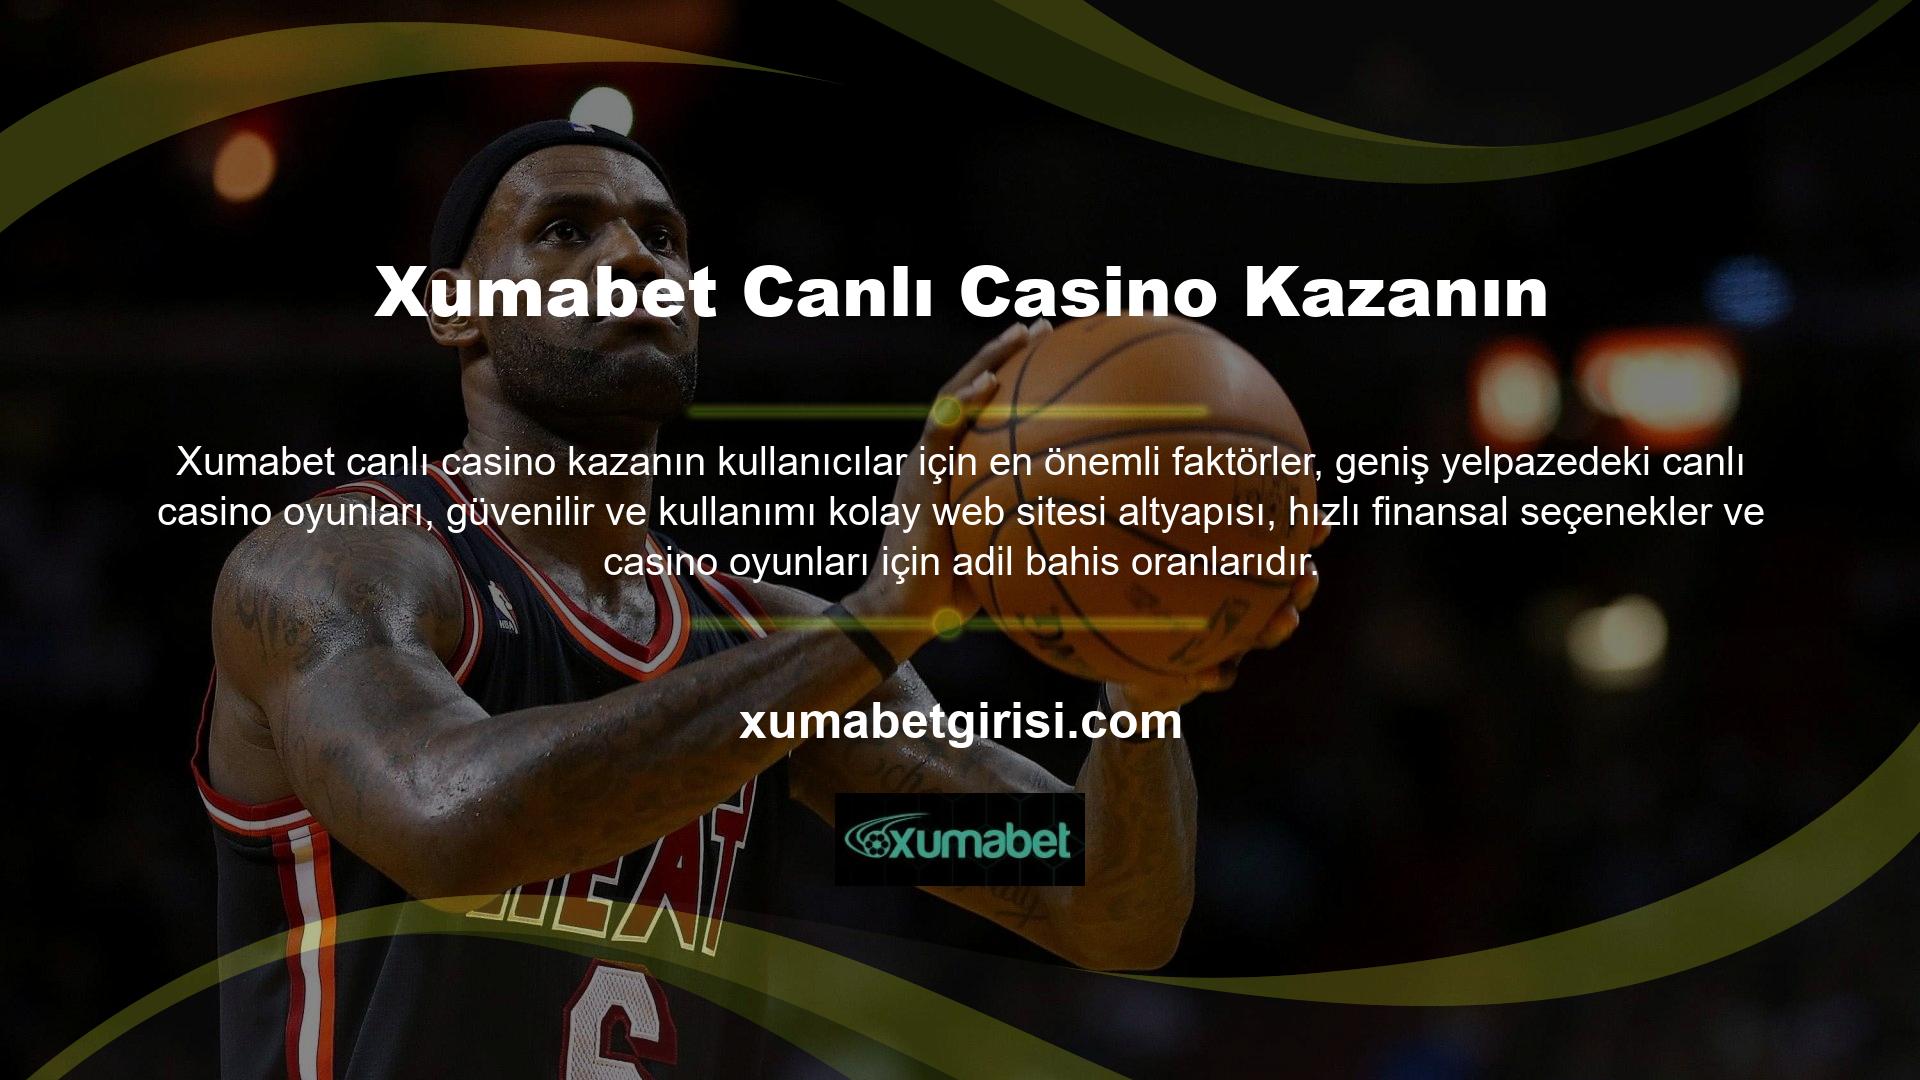 Xumabet canlı casino tüm bu özellikleri bünyesinde barındıran bir kategoridir